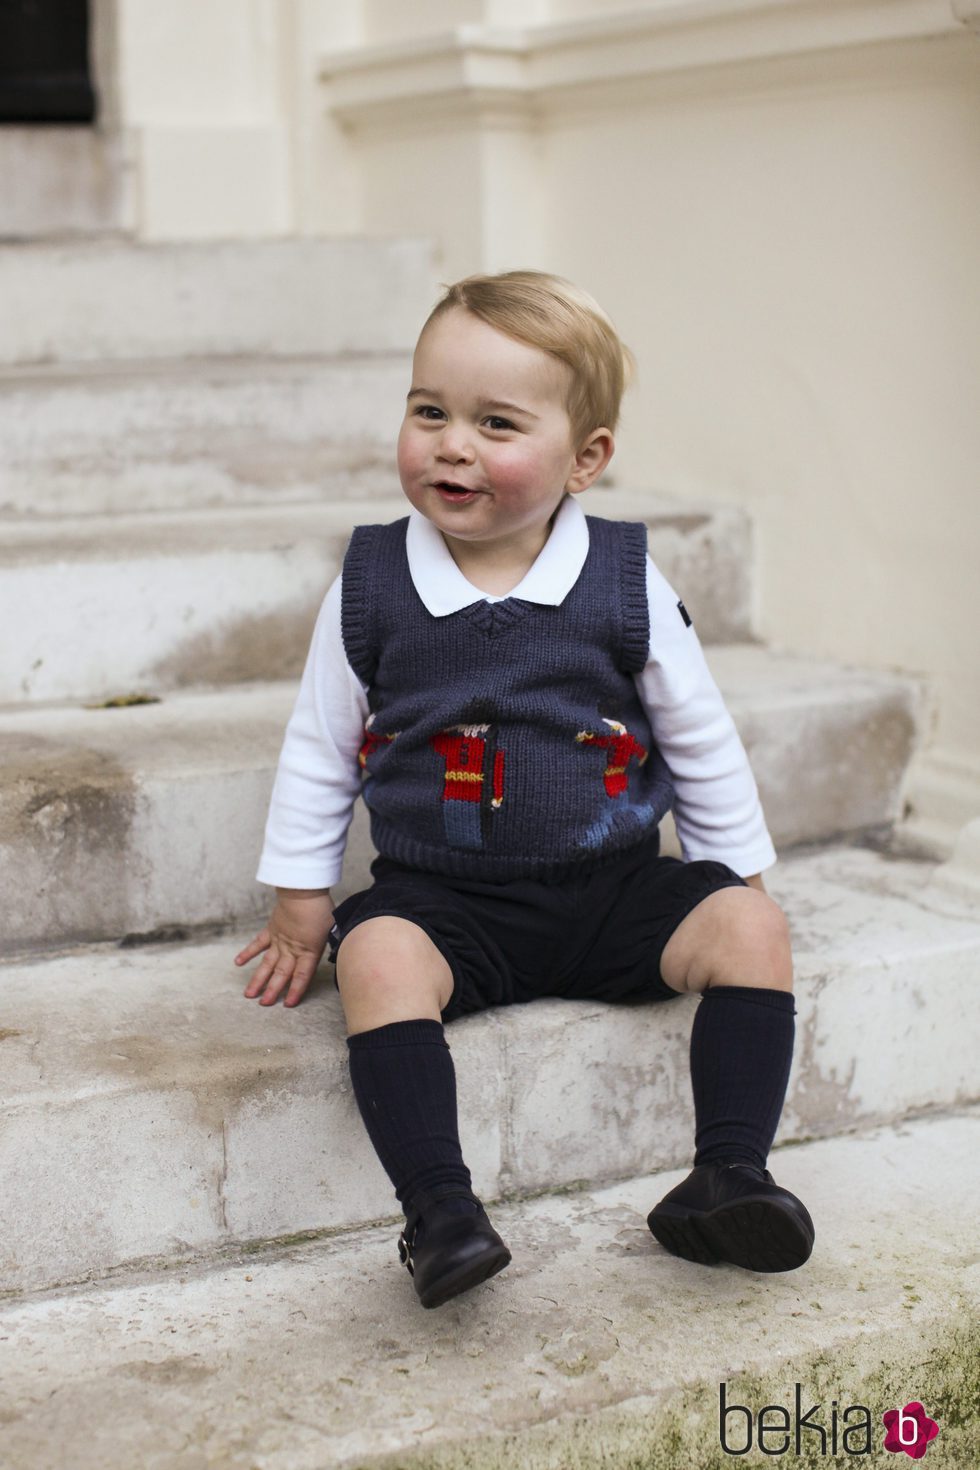 El Príncipe Jorge de Cambridge con unas bermudas cortas y chaleco navideño